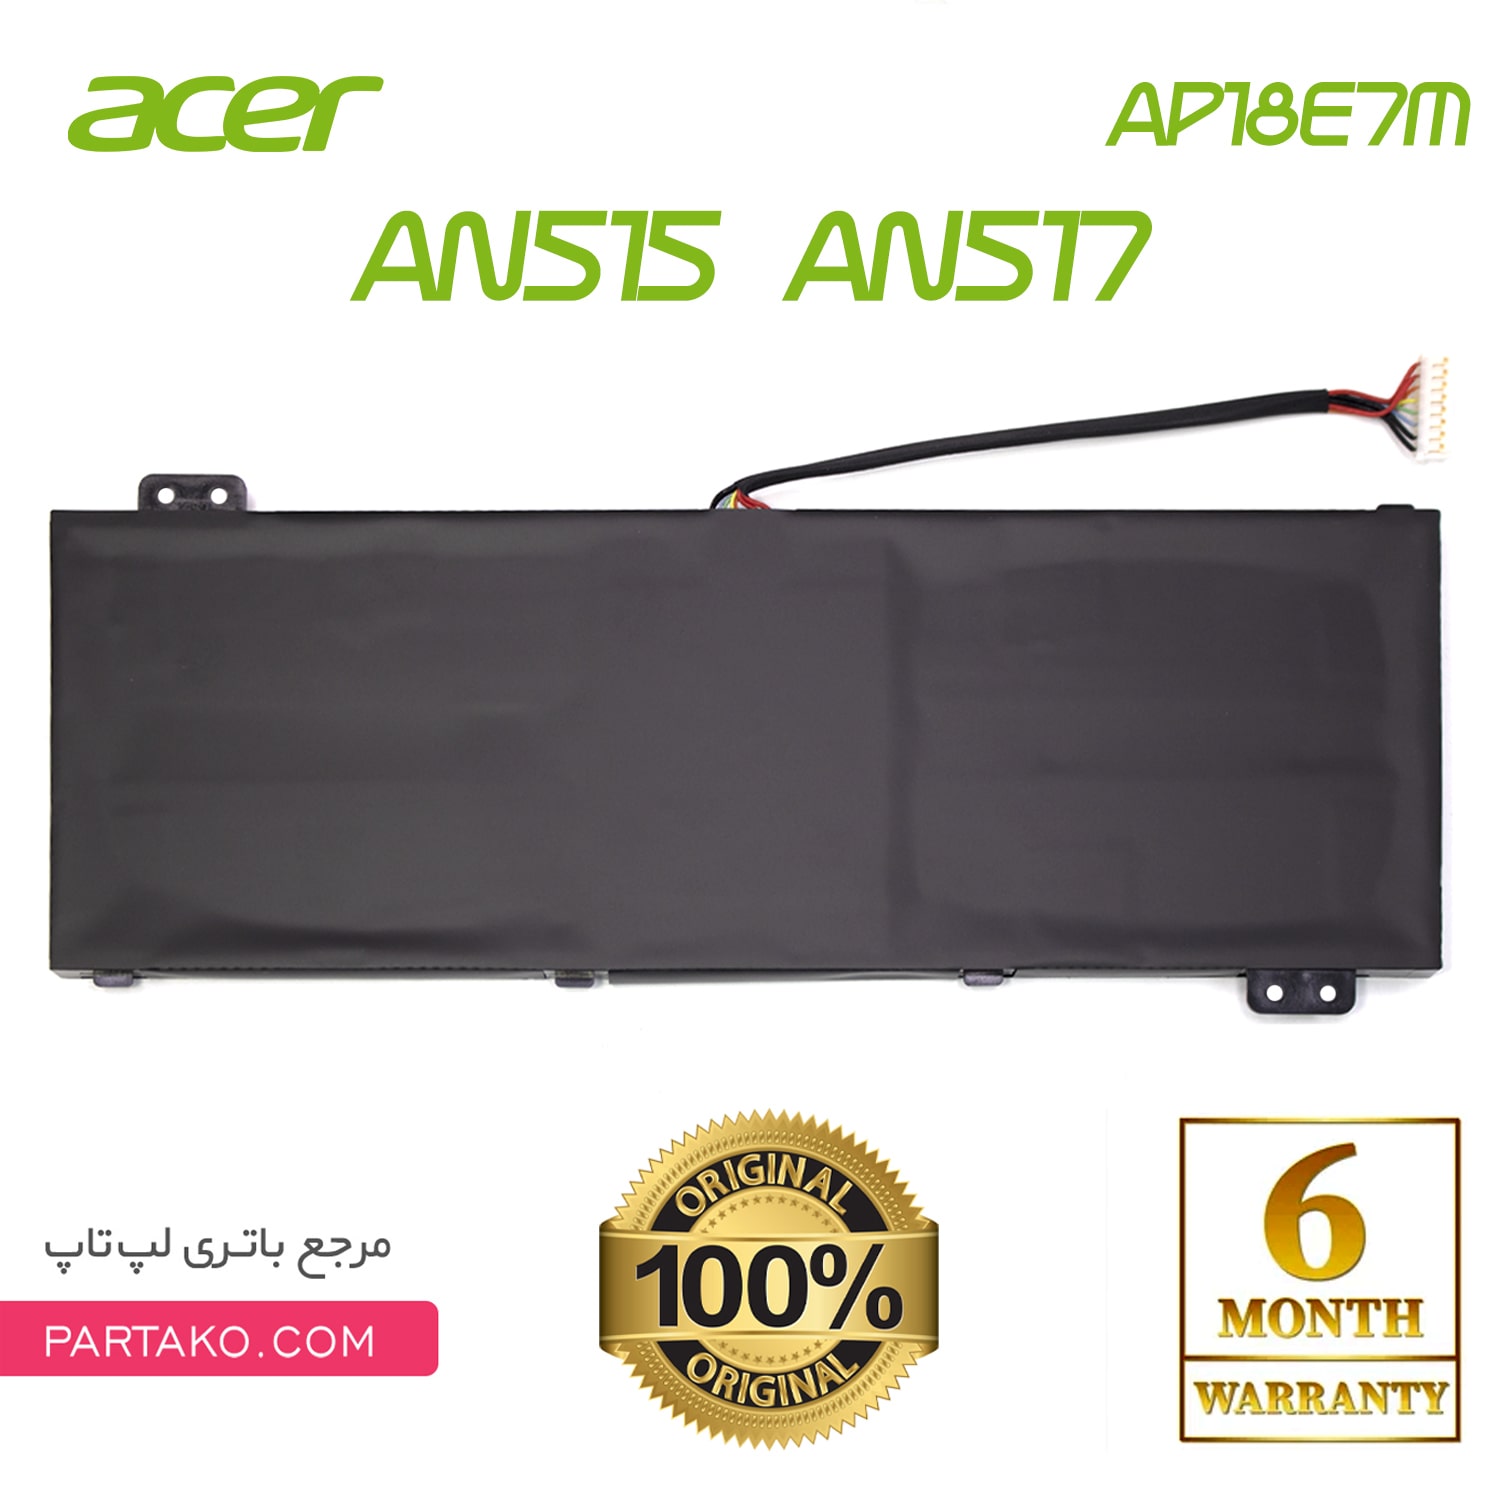 باتری لپ تاپ ایسر مدل Battery Original Acer Aspire 7 A715/ AP18E7M